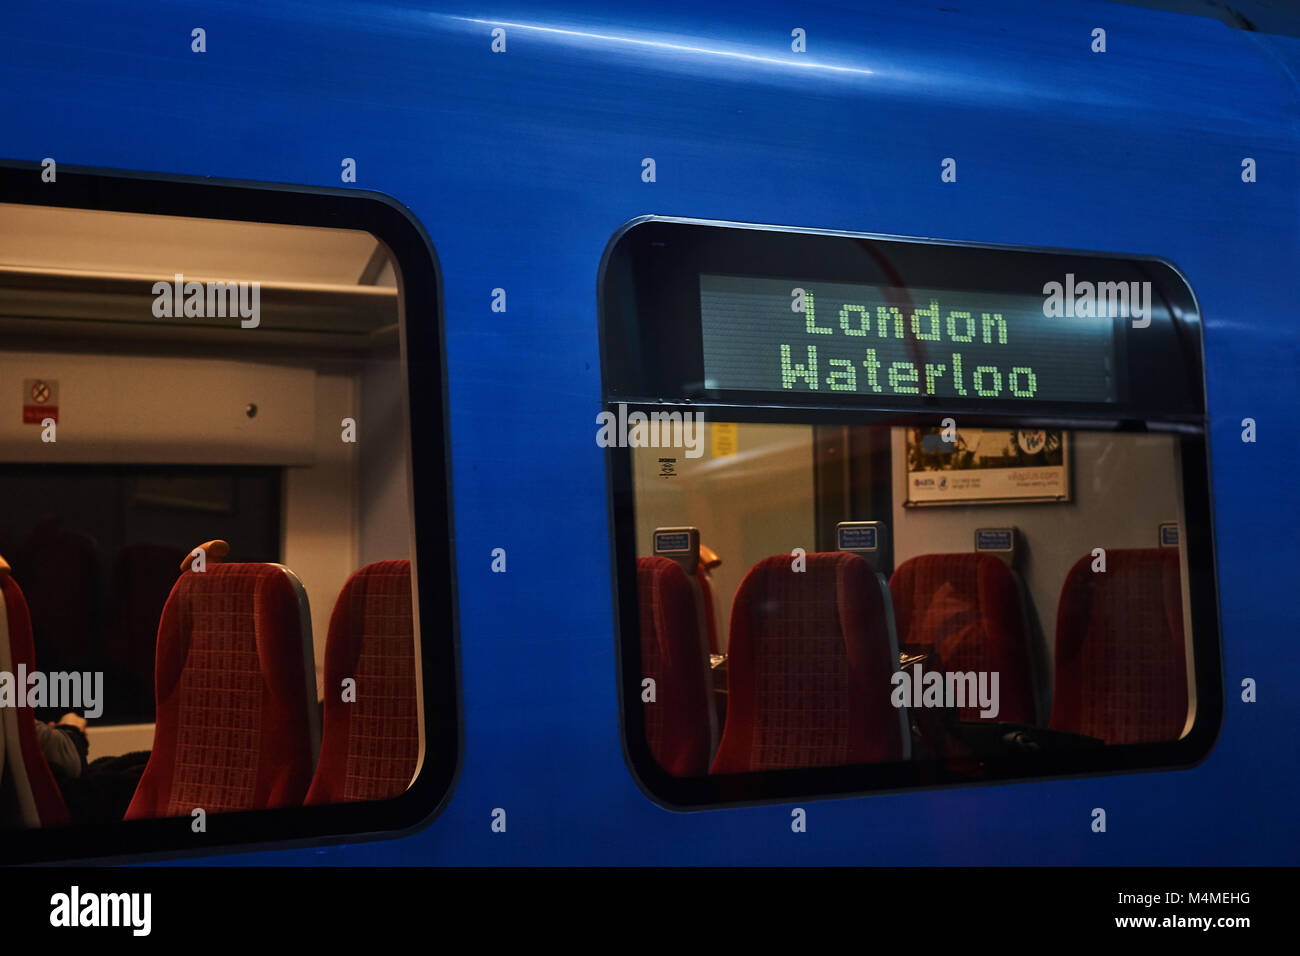 Un Southern Rail train bleu, avec la destination de Londres Waterloo montrant sur le côté du train, les sièges à l'intérieur du chariot visible à la station d'attente Banque D'Images